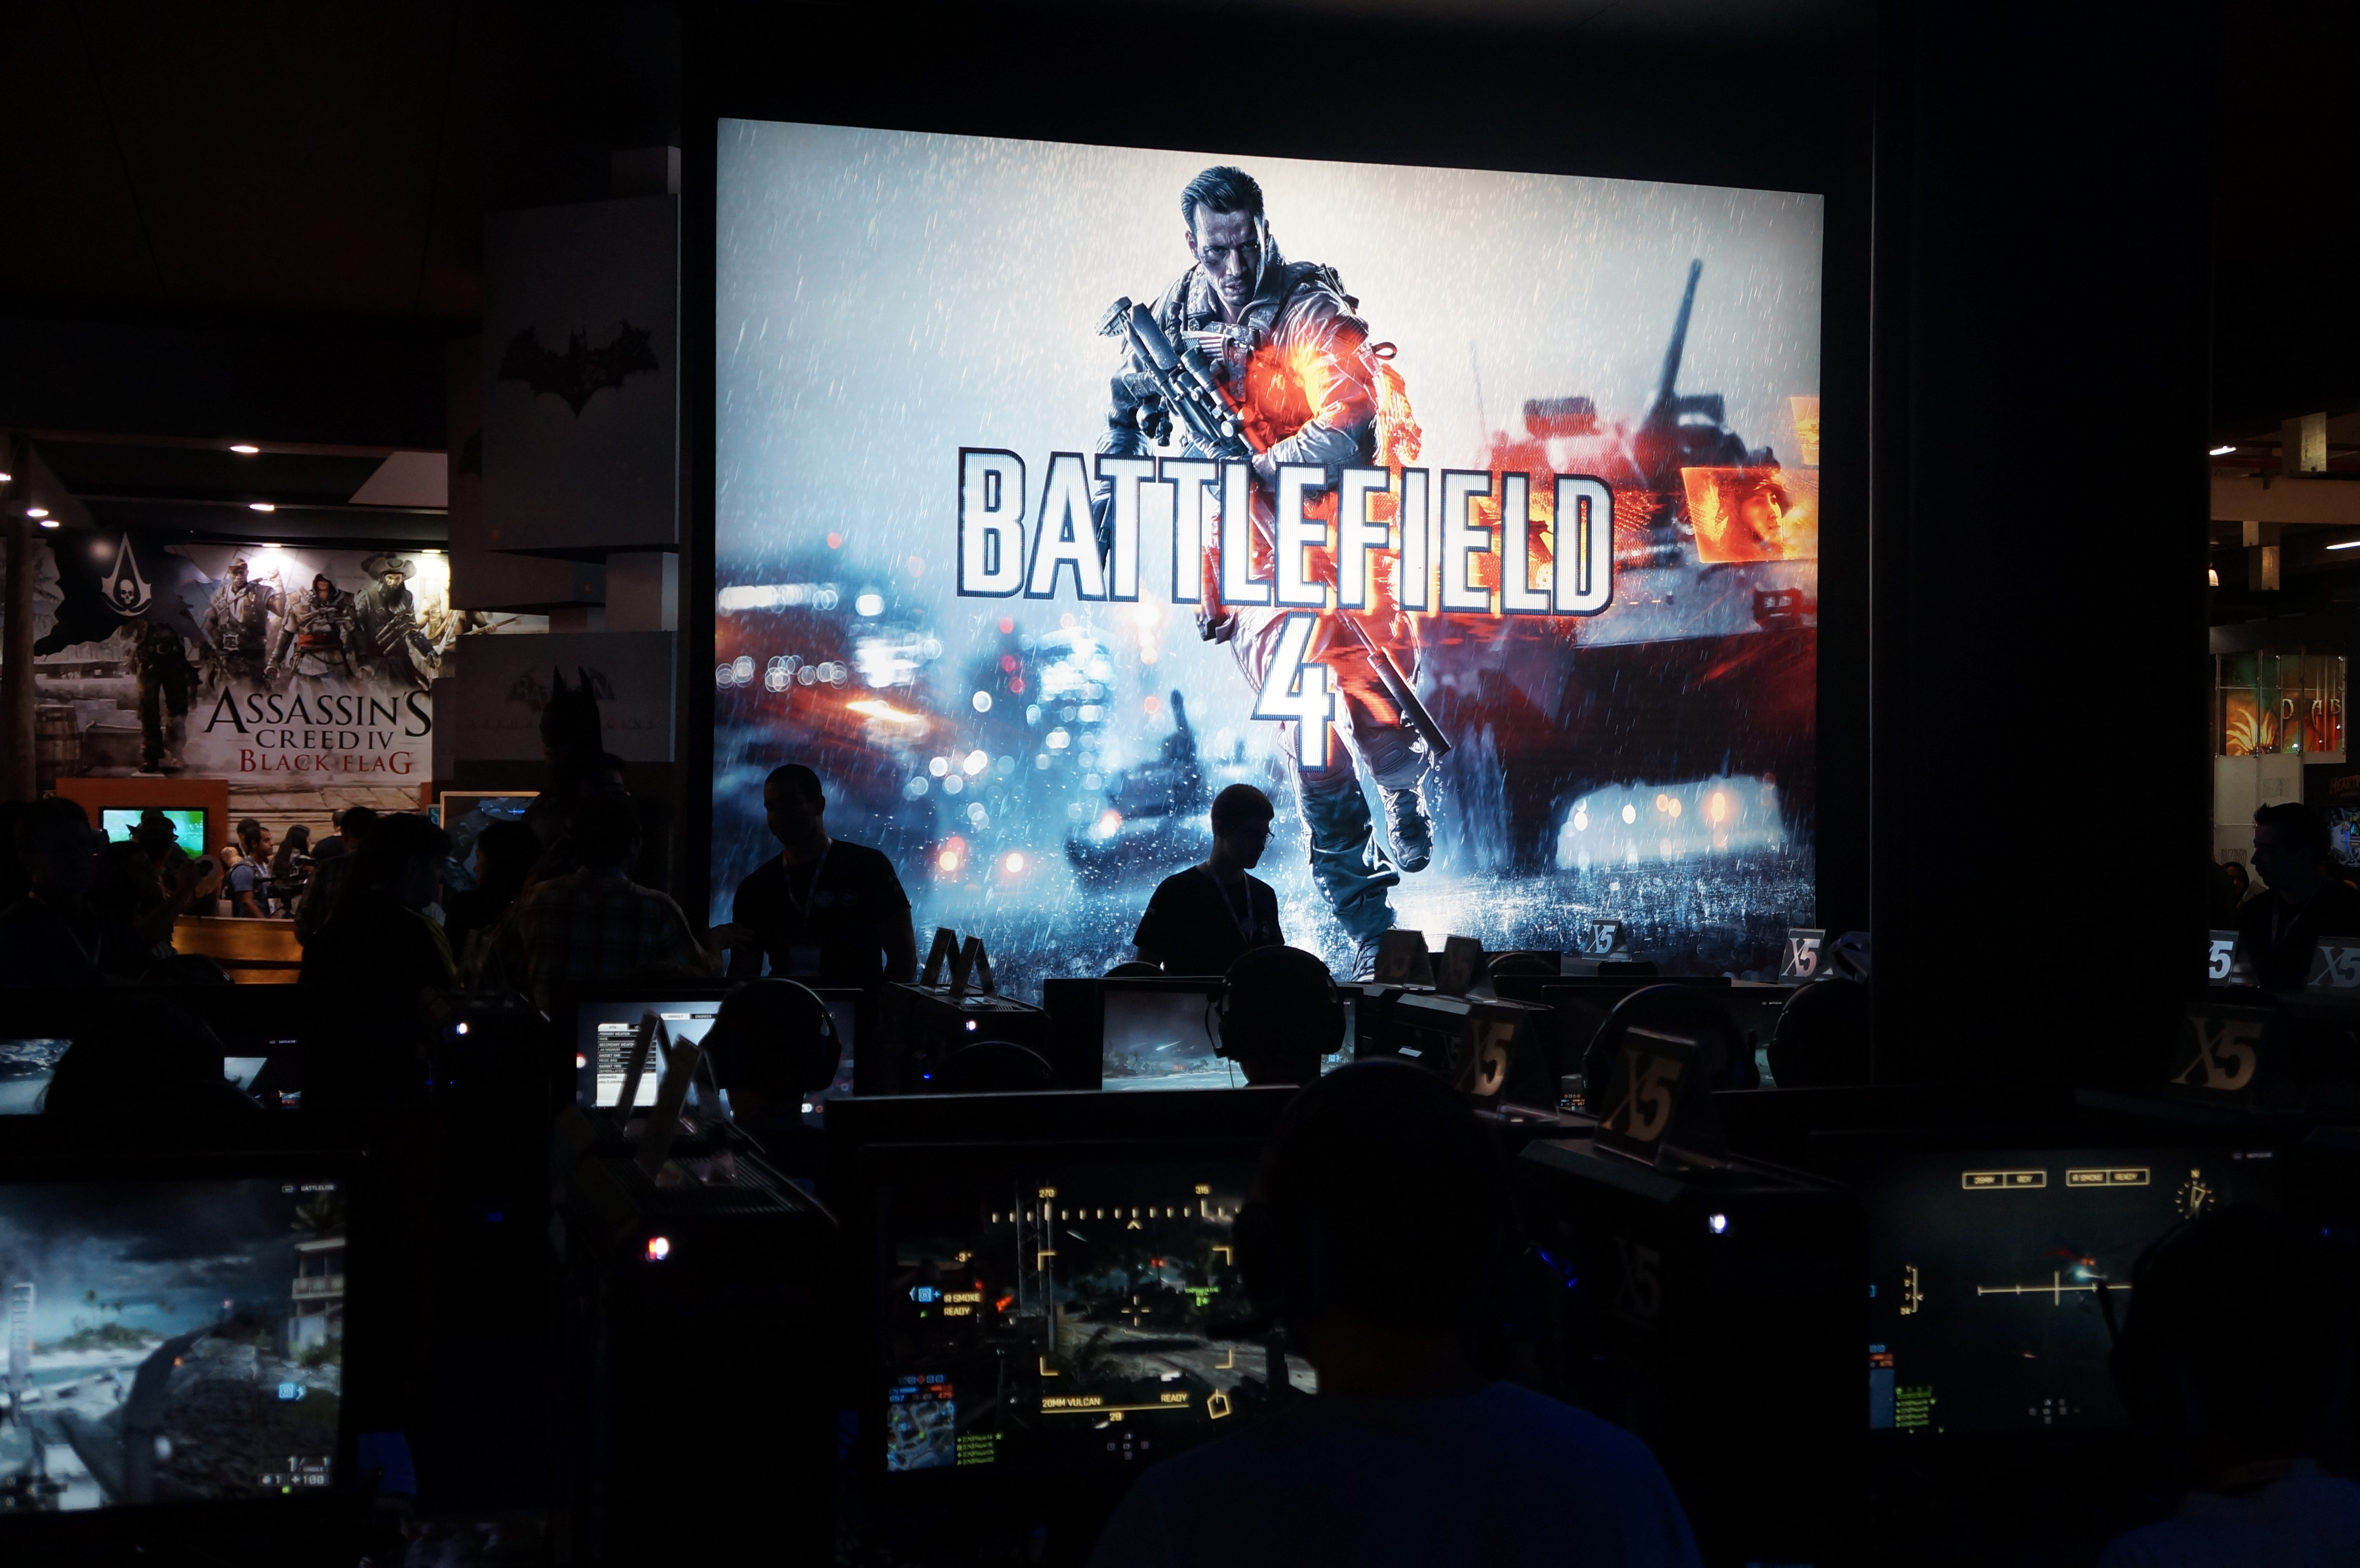 Stand de Battlefield 4, com 64 computadores em rede para jogar partida multiplayer (Foto: Spencer Stachi / TechTudo)